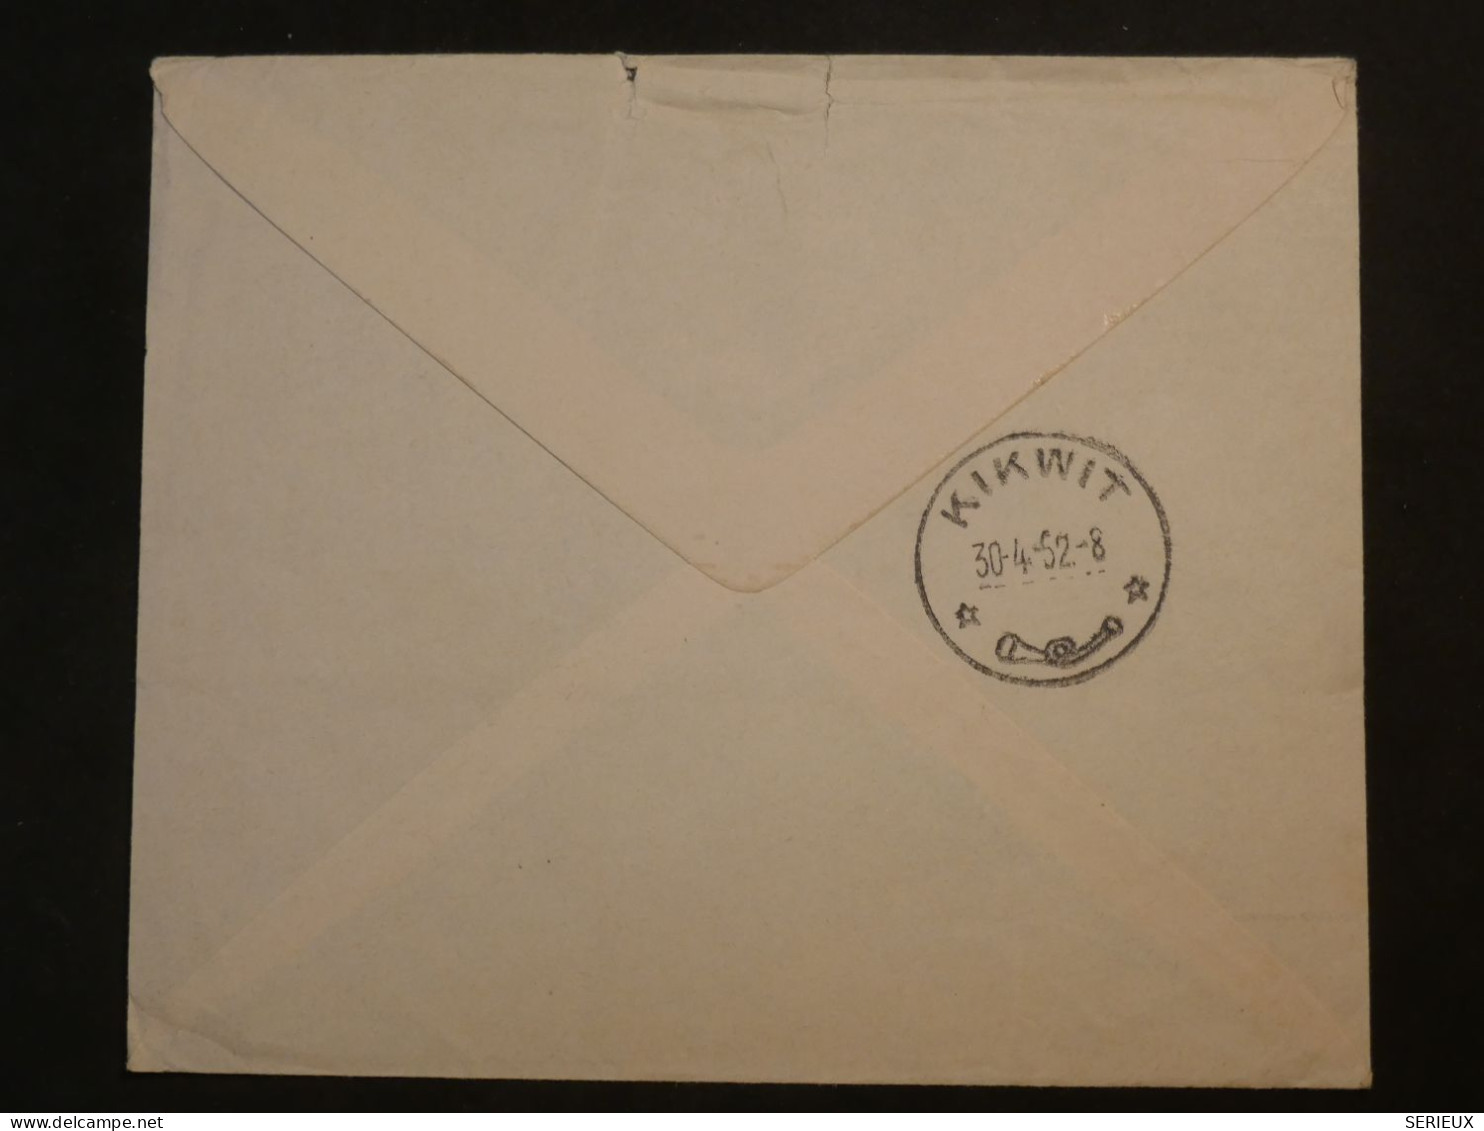 DG9  CONGO BELGE  BELLE LETTRE  1952   ZURICH  SUISSE  +KIKWIT  +AFF. INTERESSANT+++++ - Storia Postale